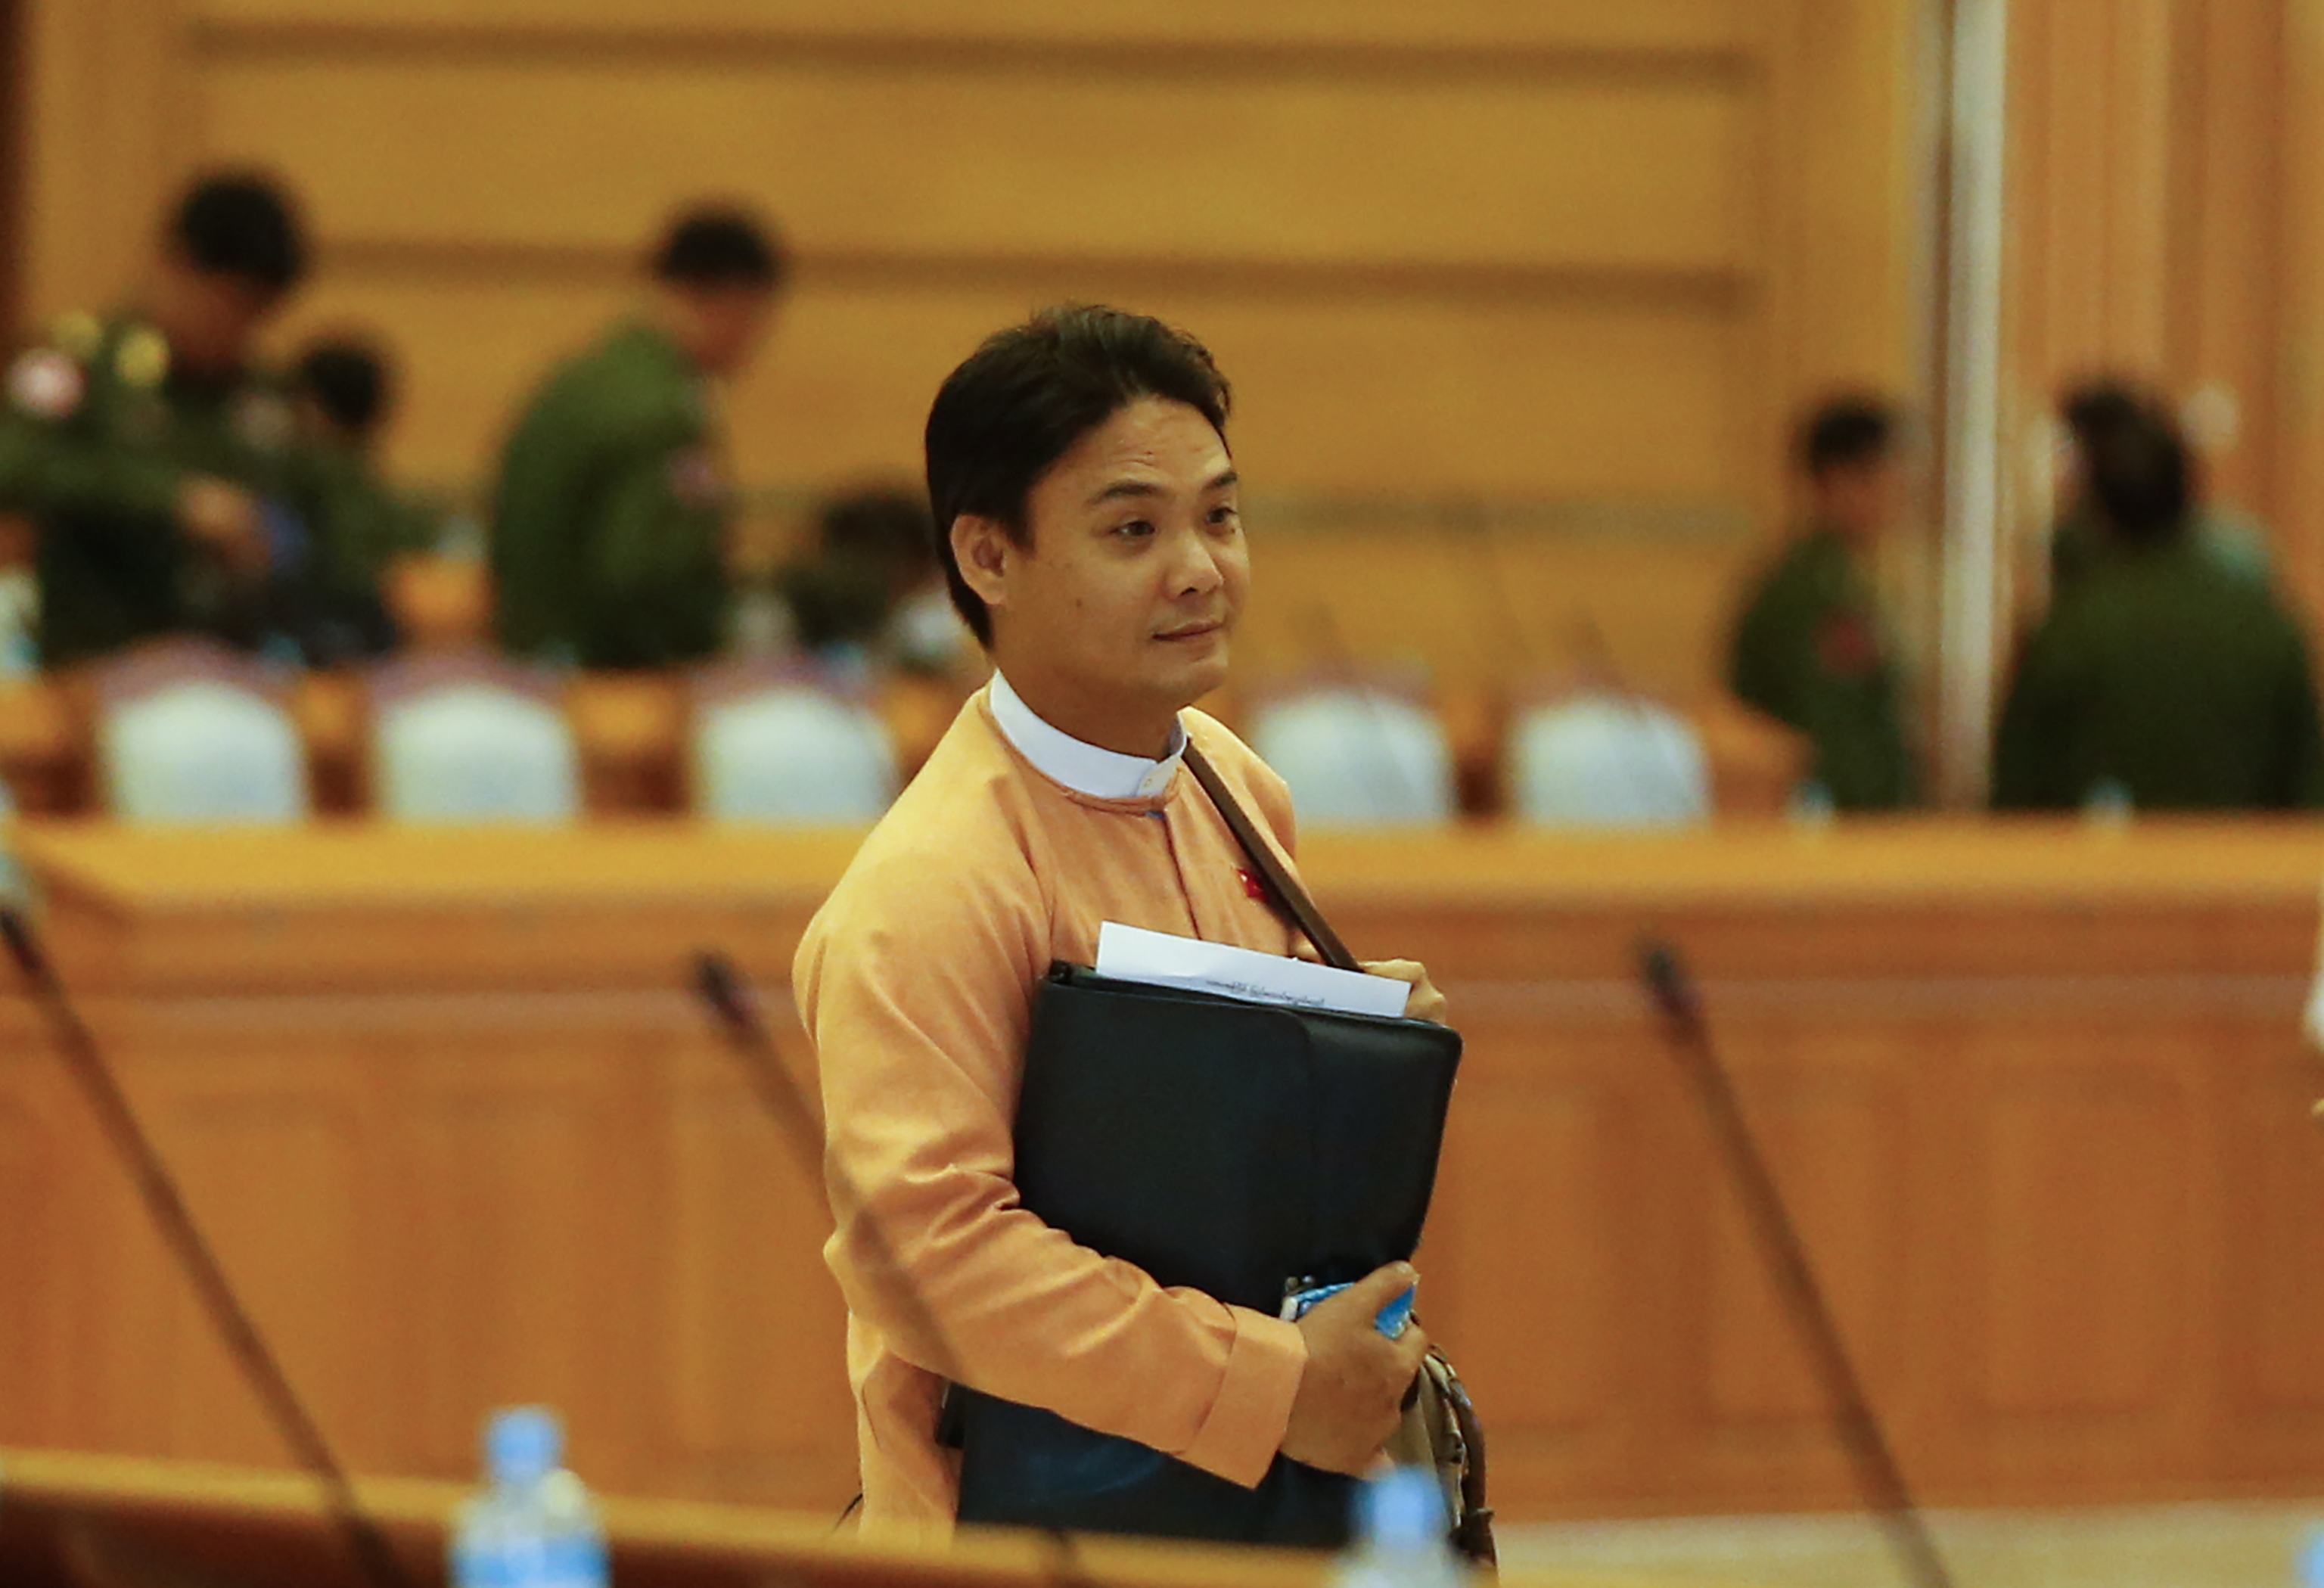 La junta militar de Birmania ejecuta a cuatro opositores,  la primera aplicación de la pena de muerte en décadas